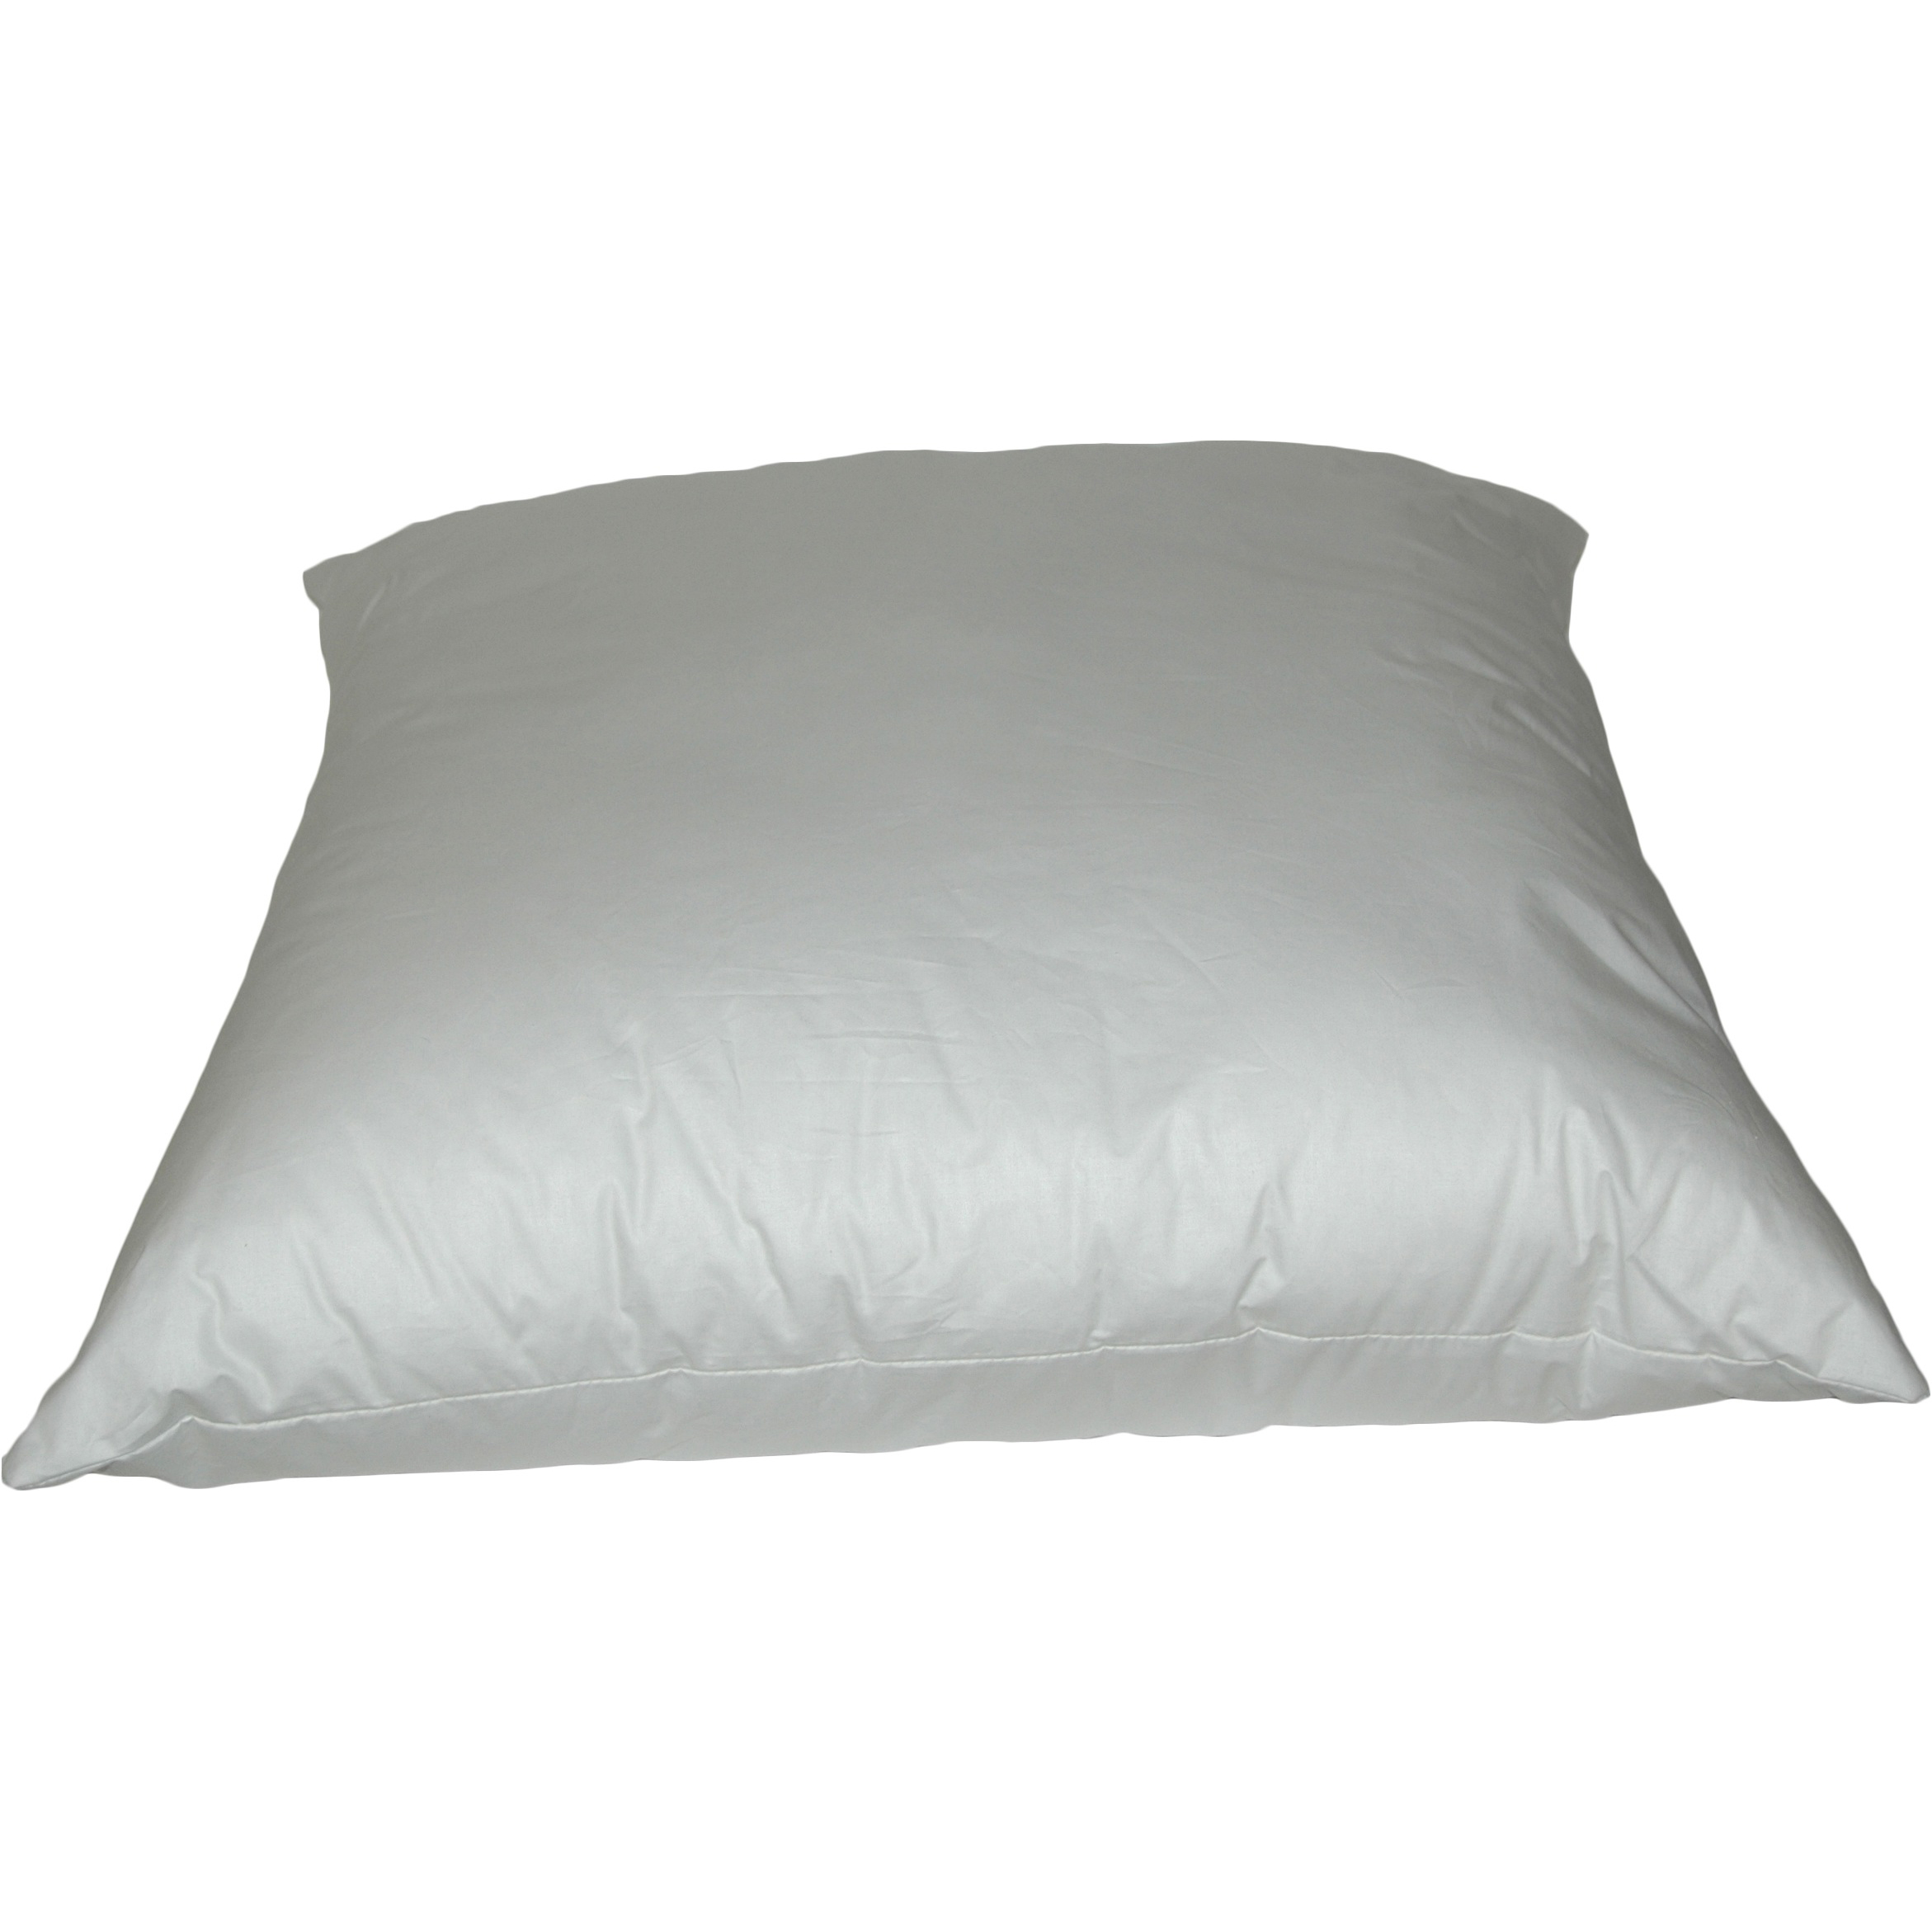 K-Fiber Pillows 26 inch